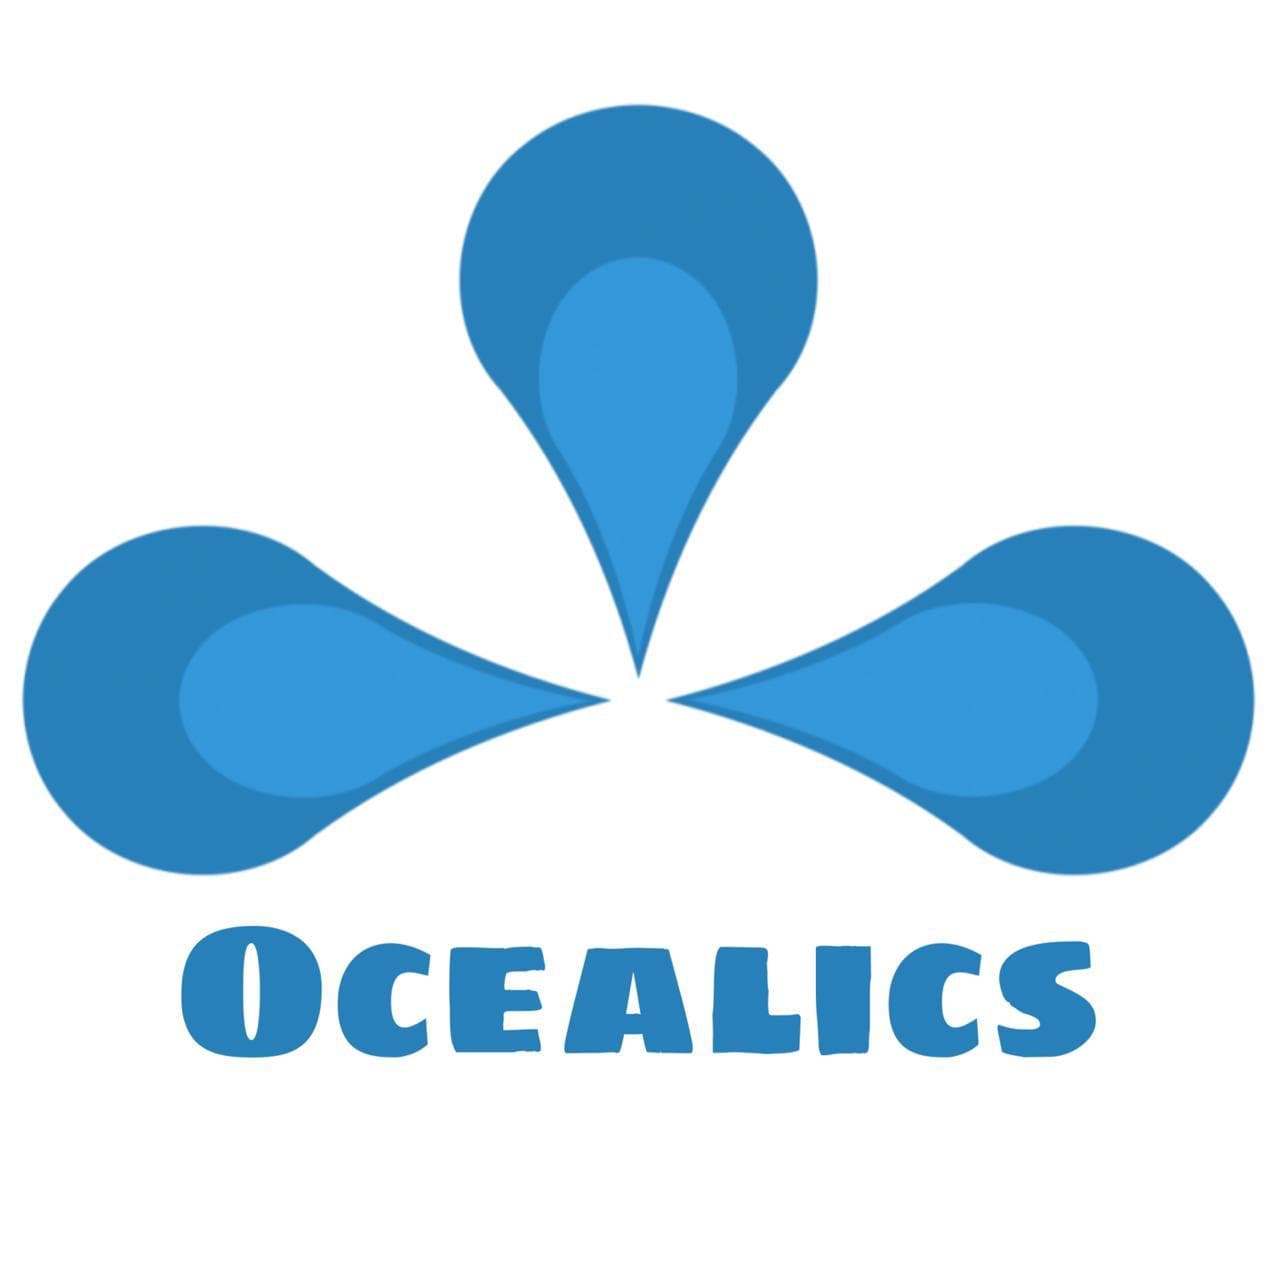 Ocealics